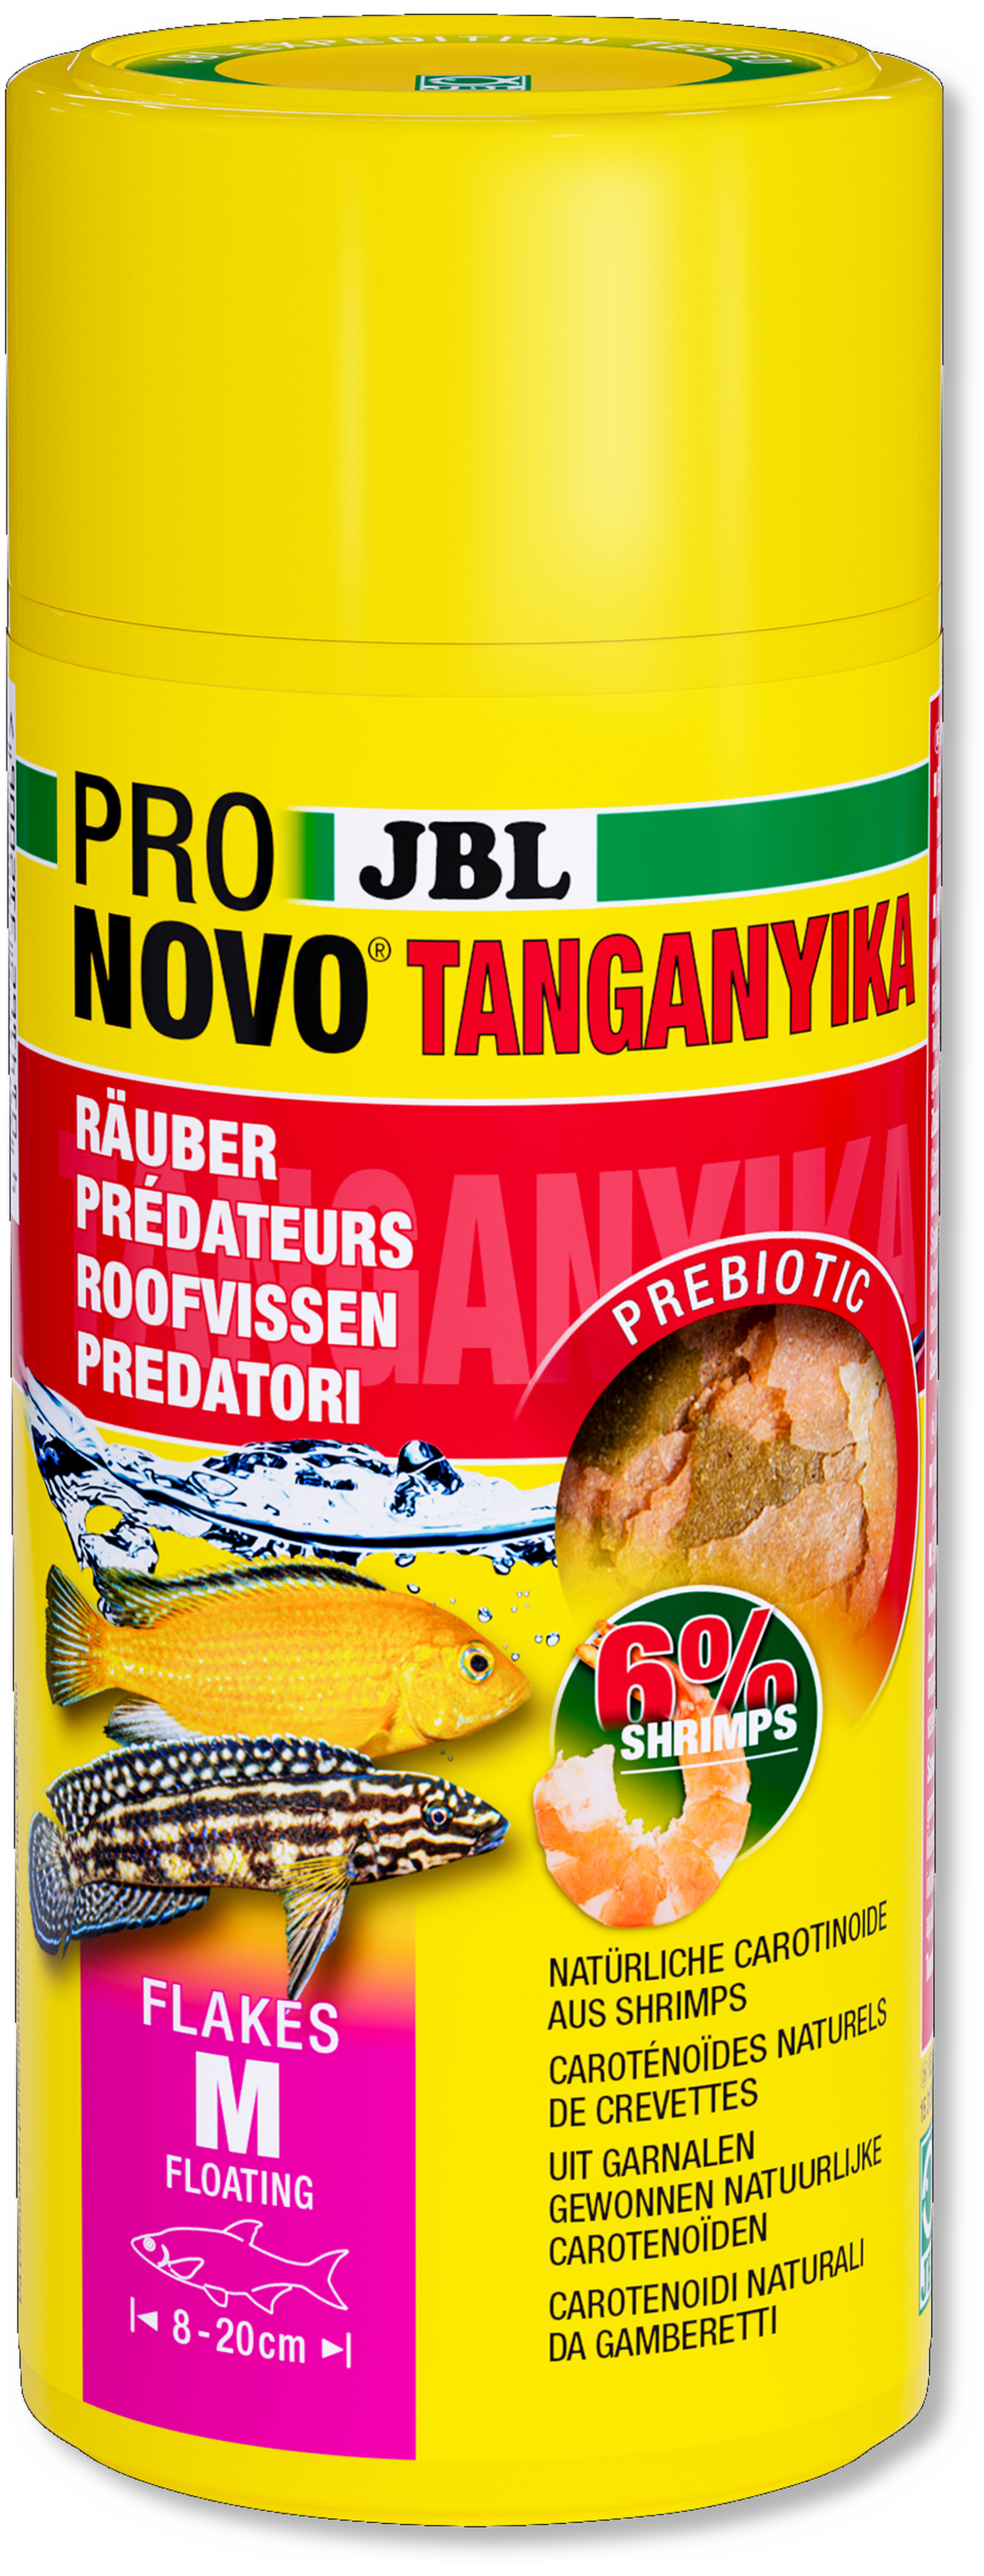 JBL ProNovo Tanganjika Flakes M